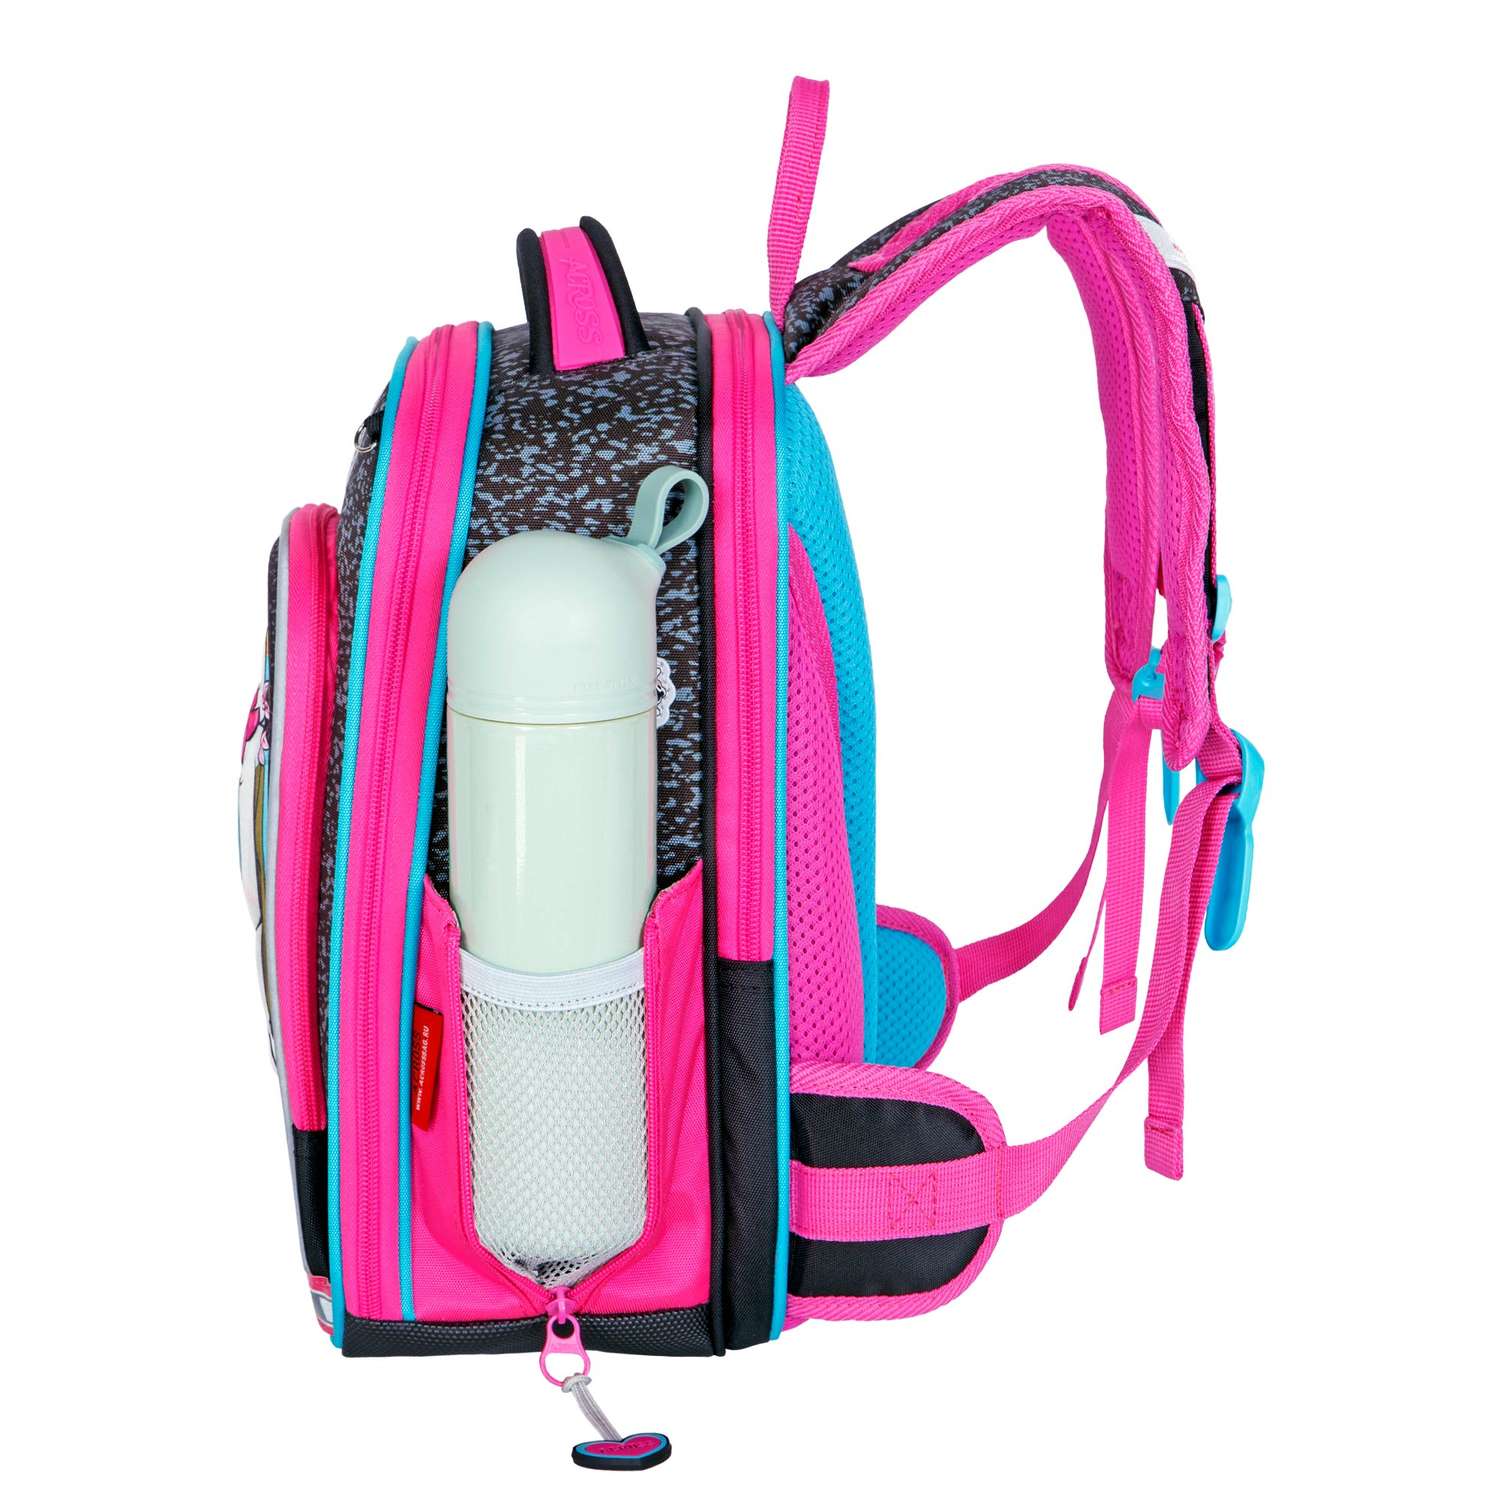 Рюкзак школьный ACROSS с наполнением: мешок для обуви пенал папка и брелок - фото 5